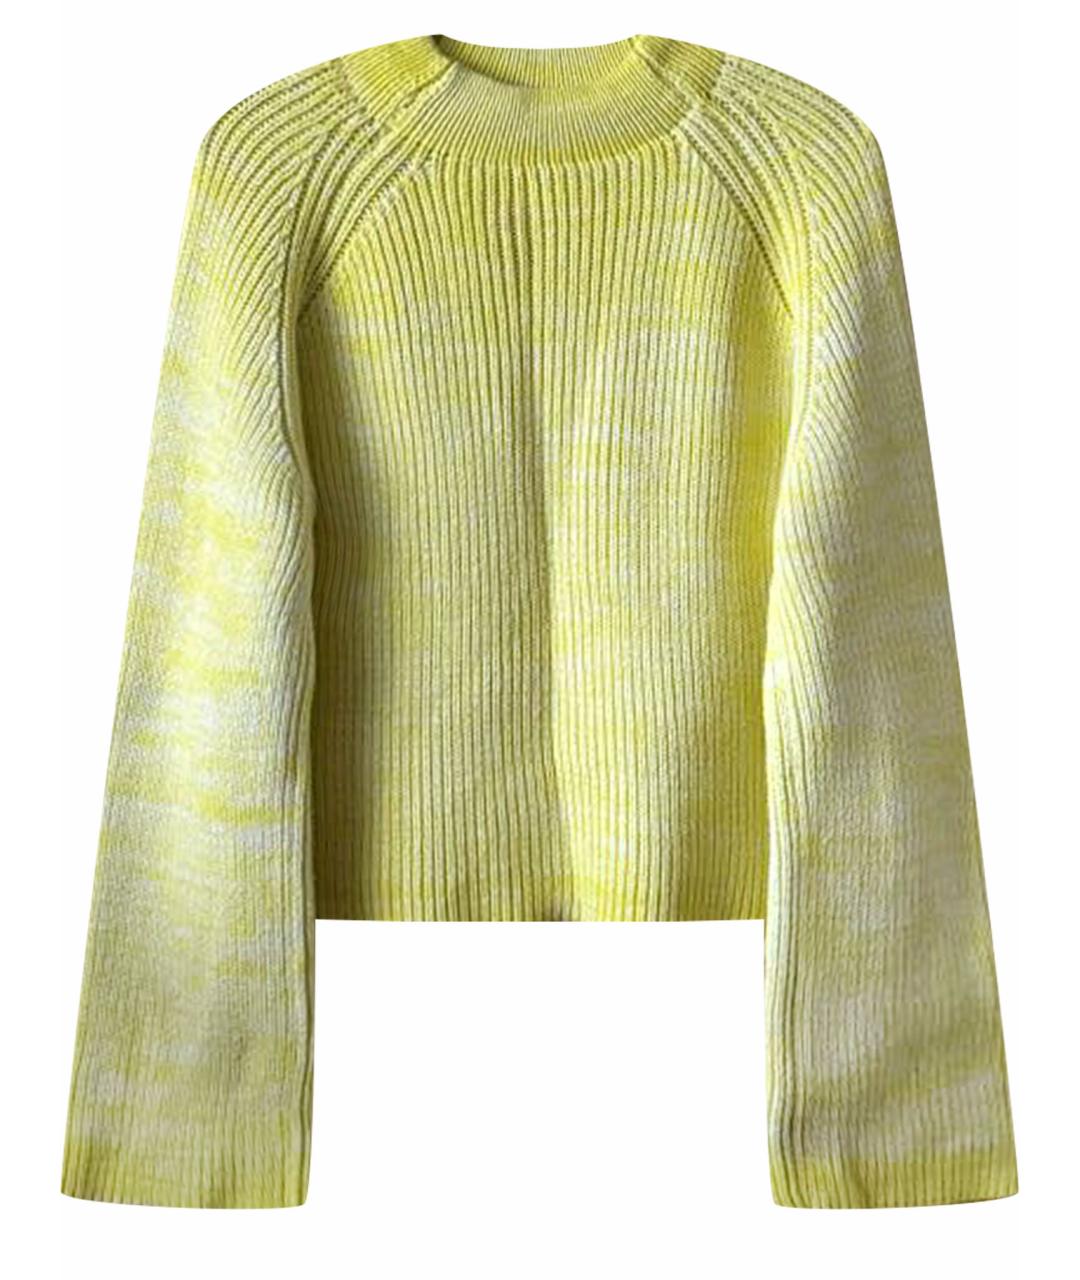 ESCADA Желтый хлопковый джемпер / свитер, фото 1